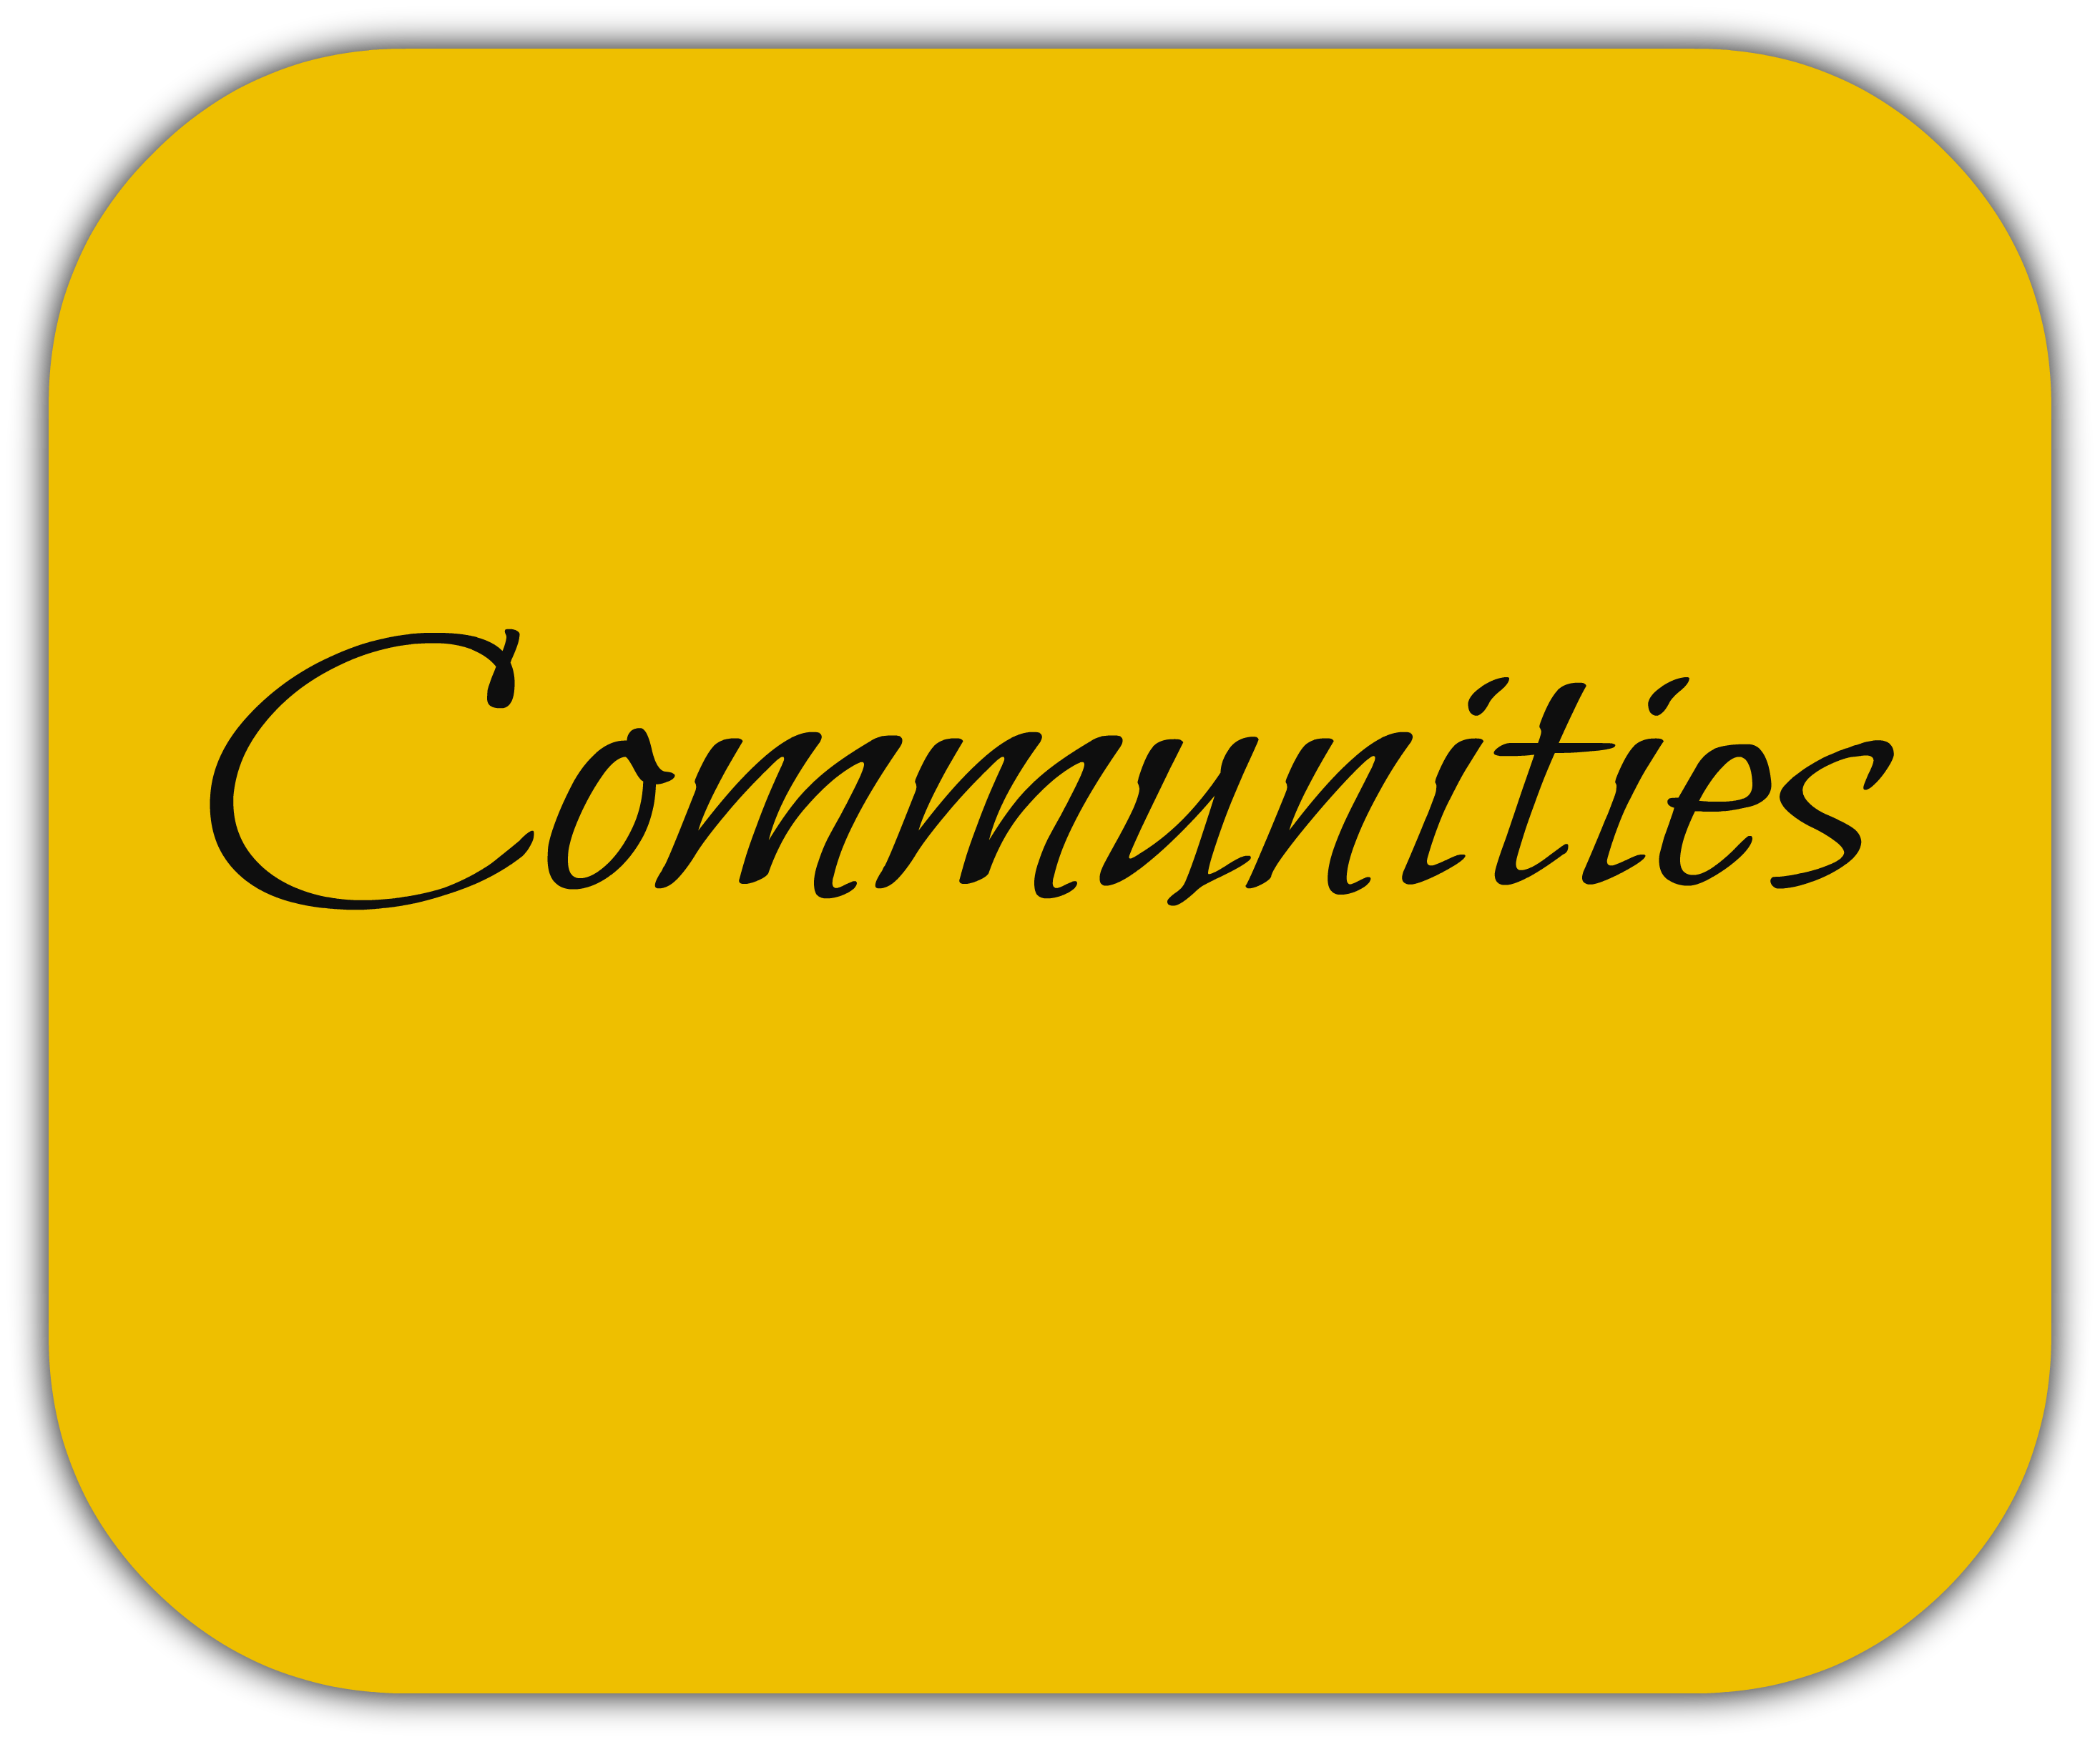 Pocono Communities